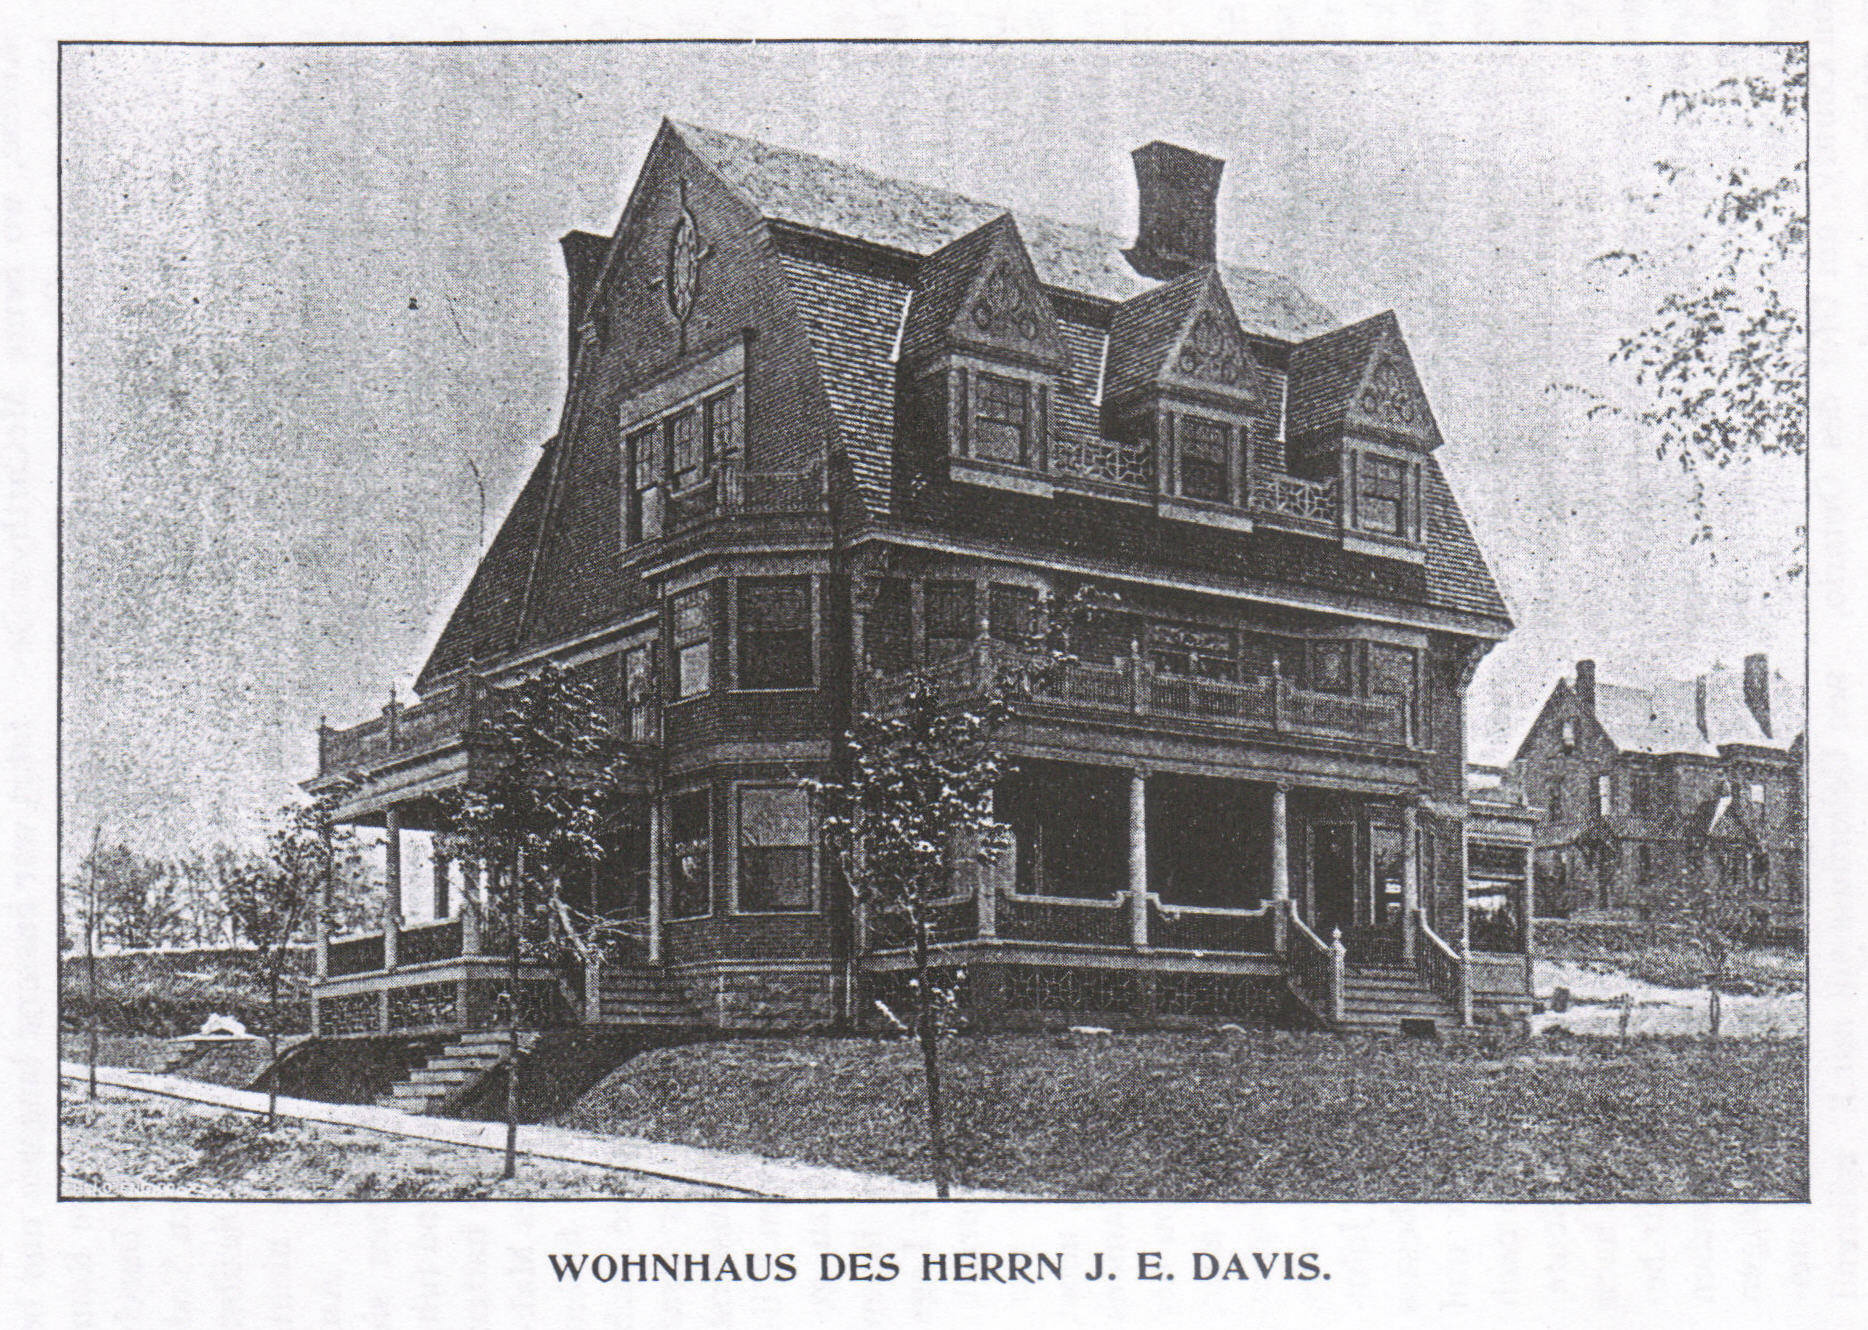 Residence of J. E. Davis